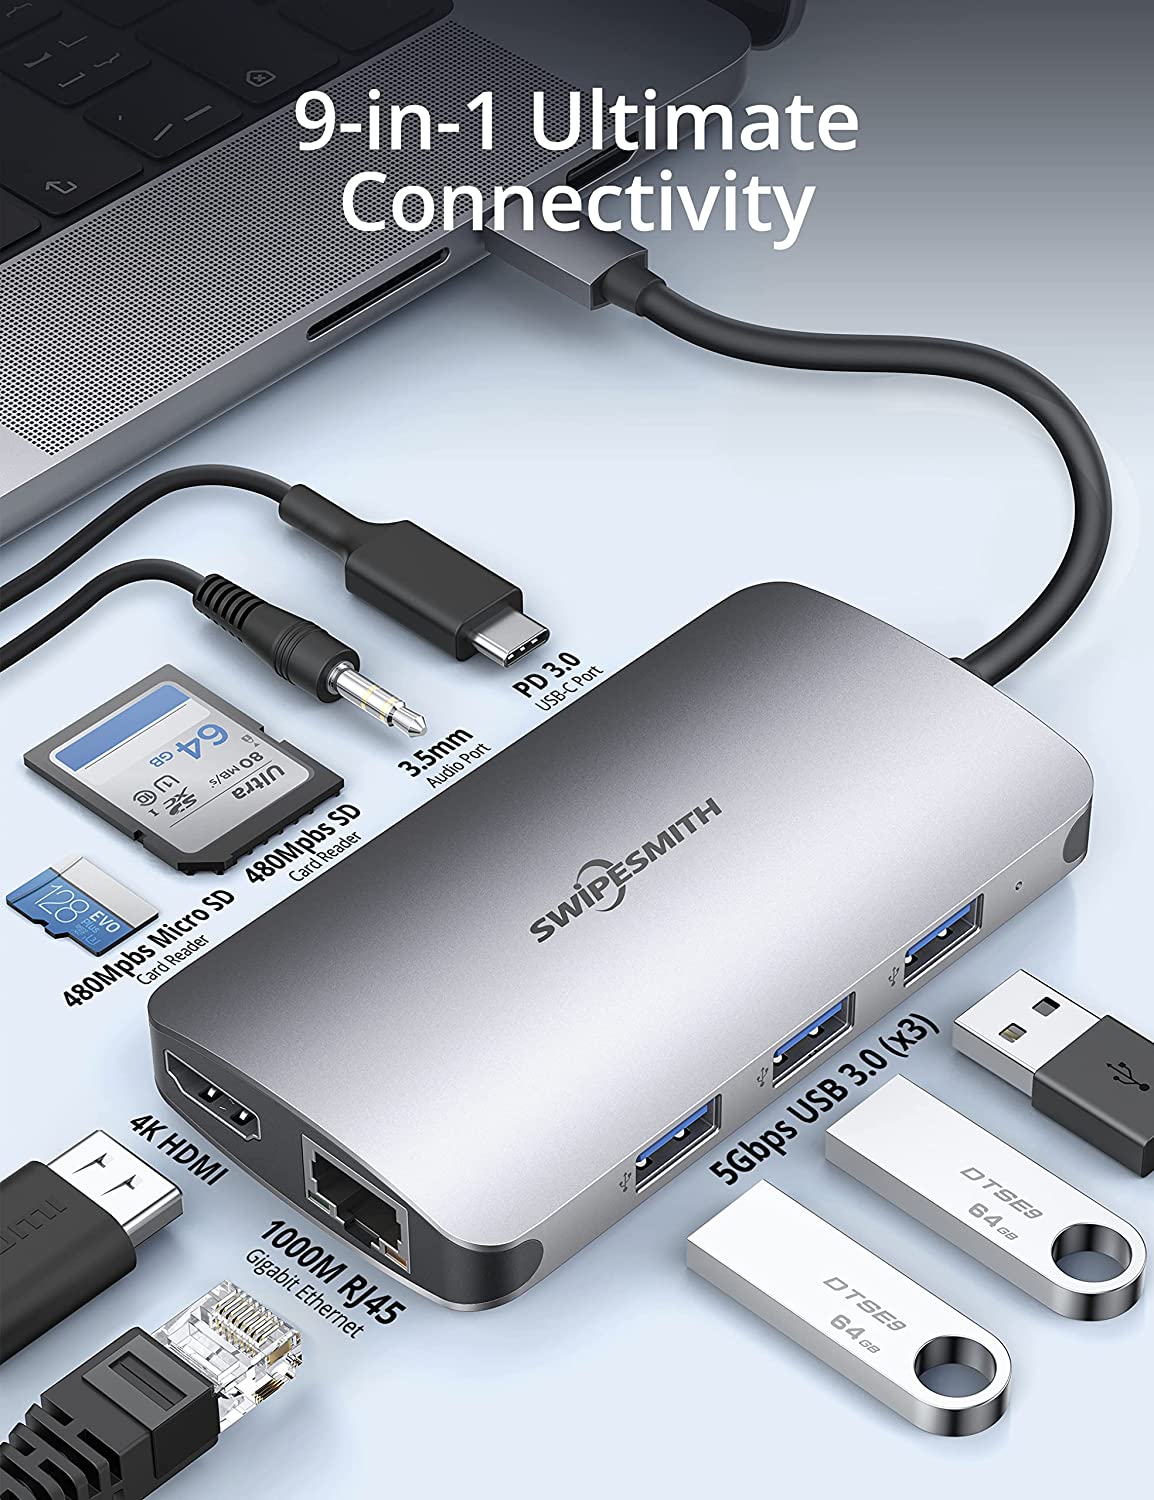 USB-C Multiport Adapter 8 in 1, HDMI 4K, VGA, HDTV, USB 3.0